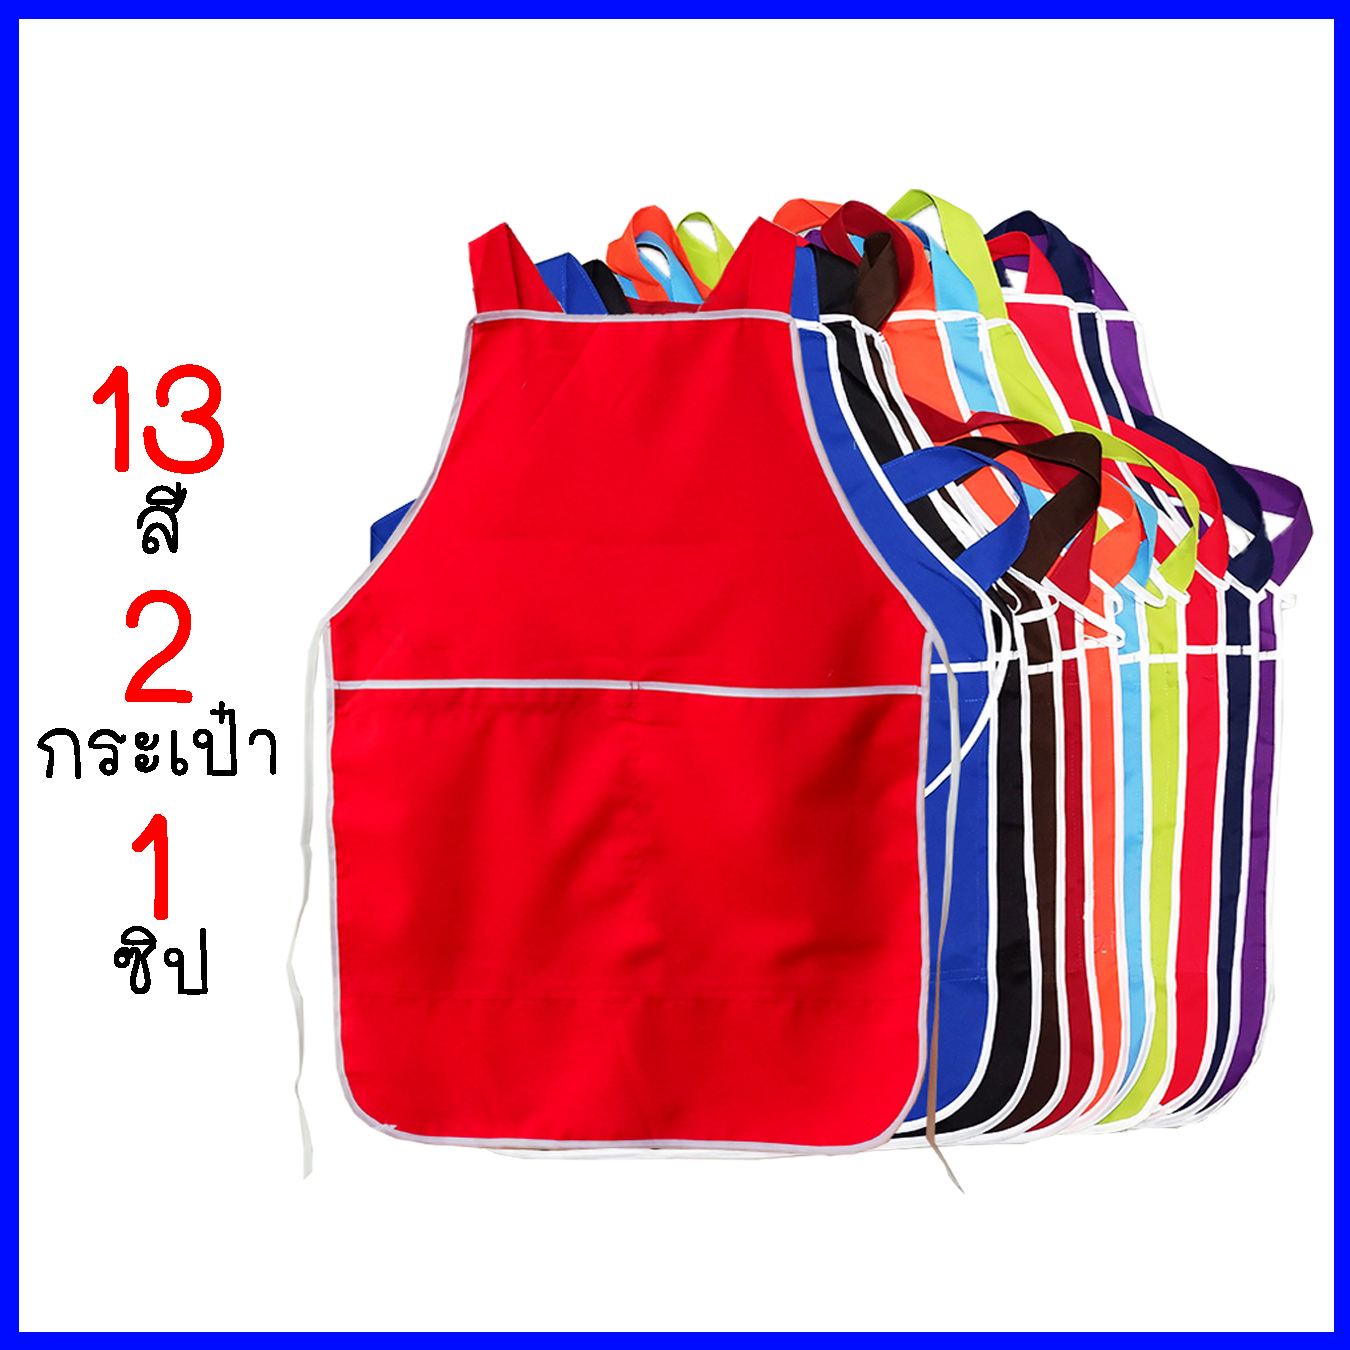 (13สี)ผ้ากันเปื้อน 2กระเป๋า1ซิป สีพื้น ผ้ากันเปื้อนแม่ค้า ผ้ากันเปื้อนทำอาหาร เนื้อผ้าอย่างดี เอี้ยมกันเปื้อน(E15)